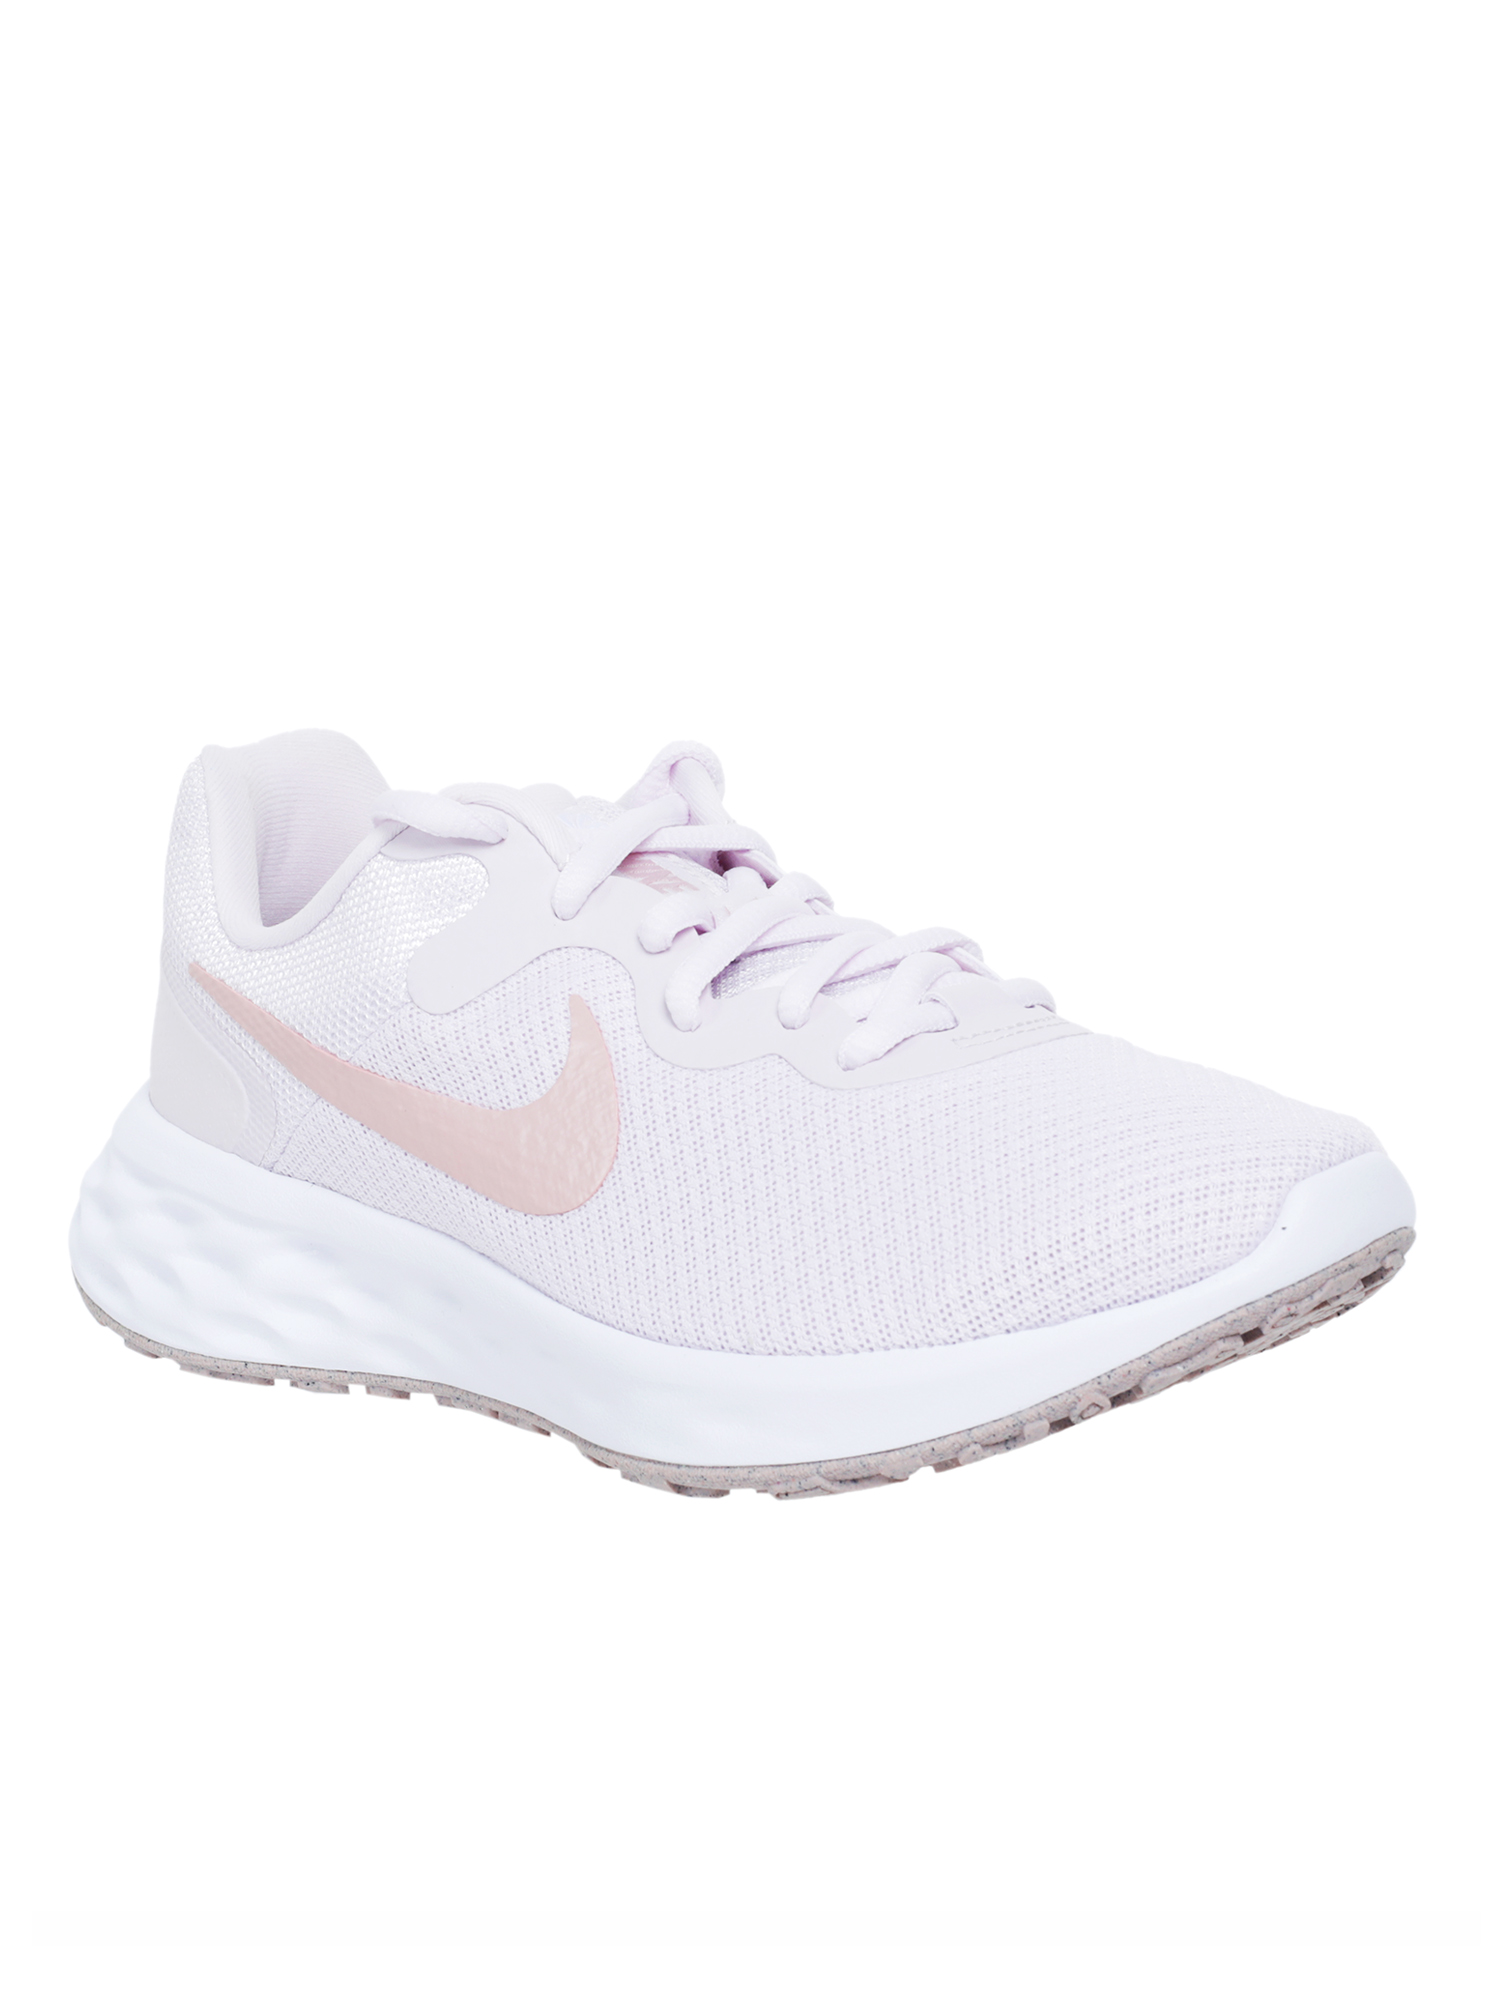 Спортивные кроссовки женские Nike Revolution 6 Nn W розовые 5.5 US